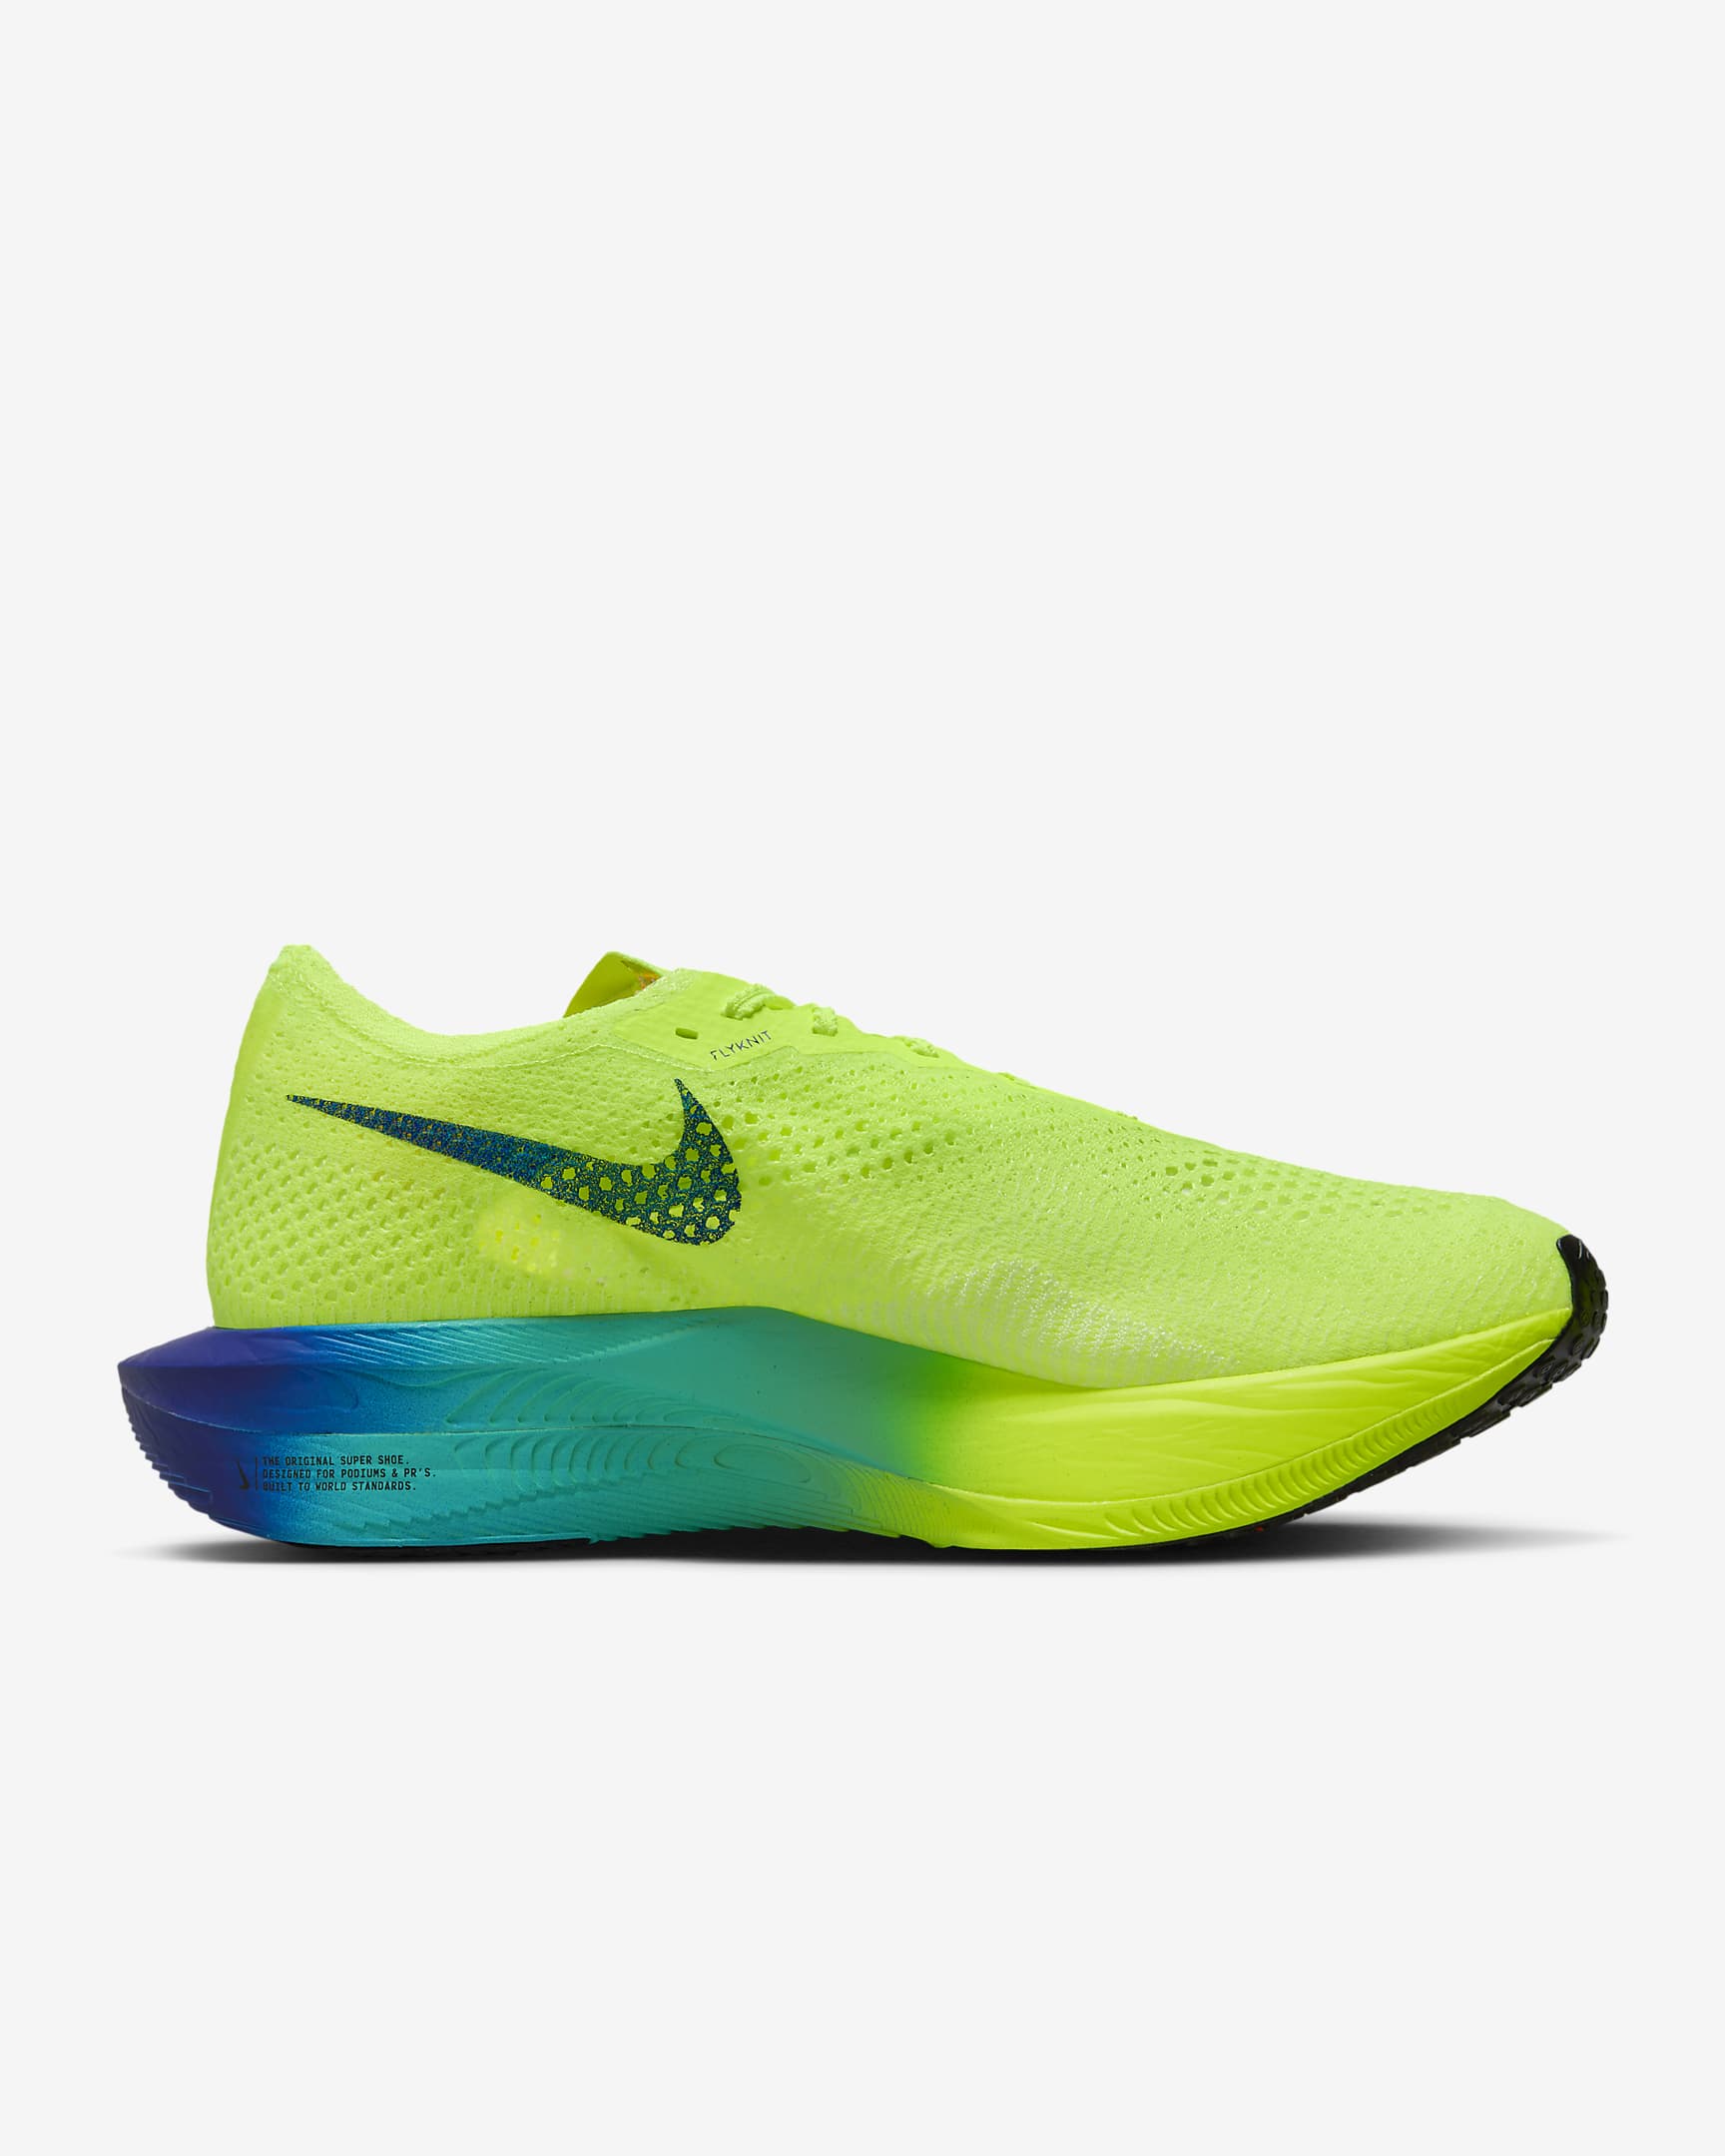 Nike Vaporfly 3 Zapatillas de competición para asfalto - Hombre - Volt/Scream Green/Barely Volt/Negro